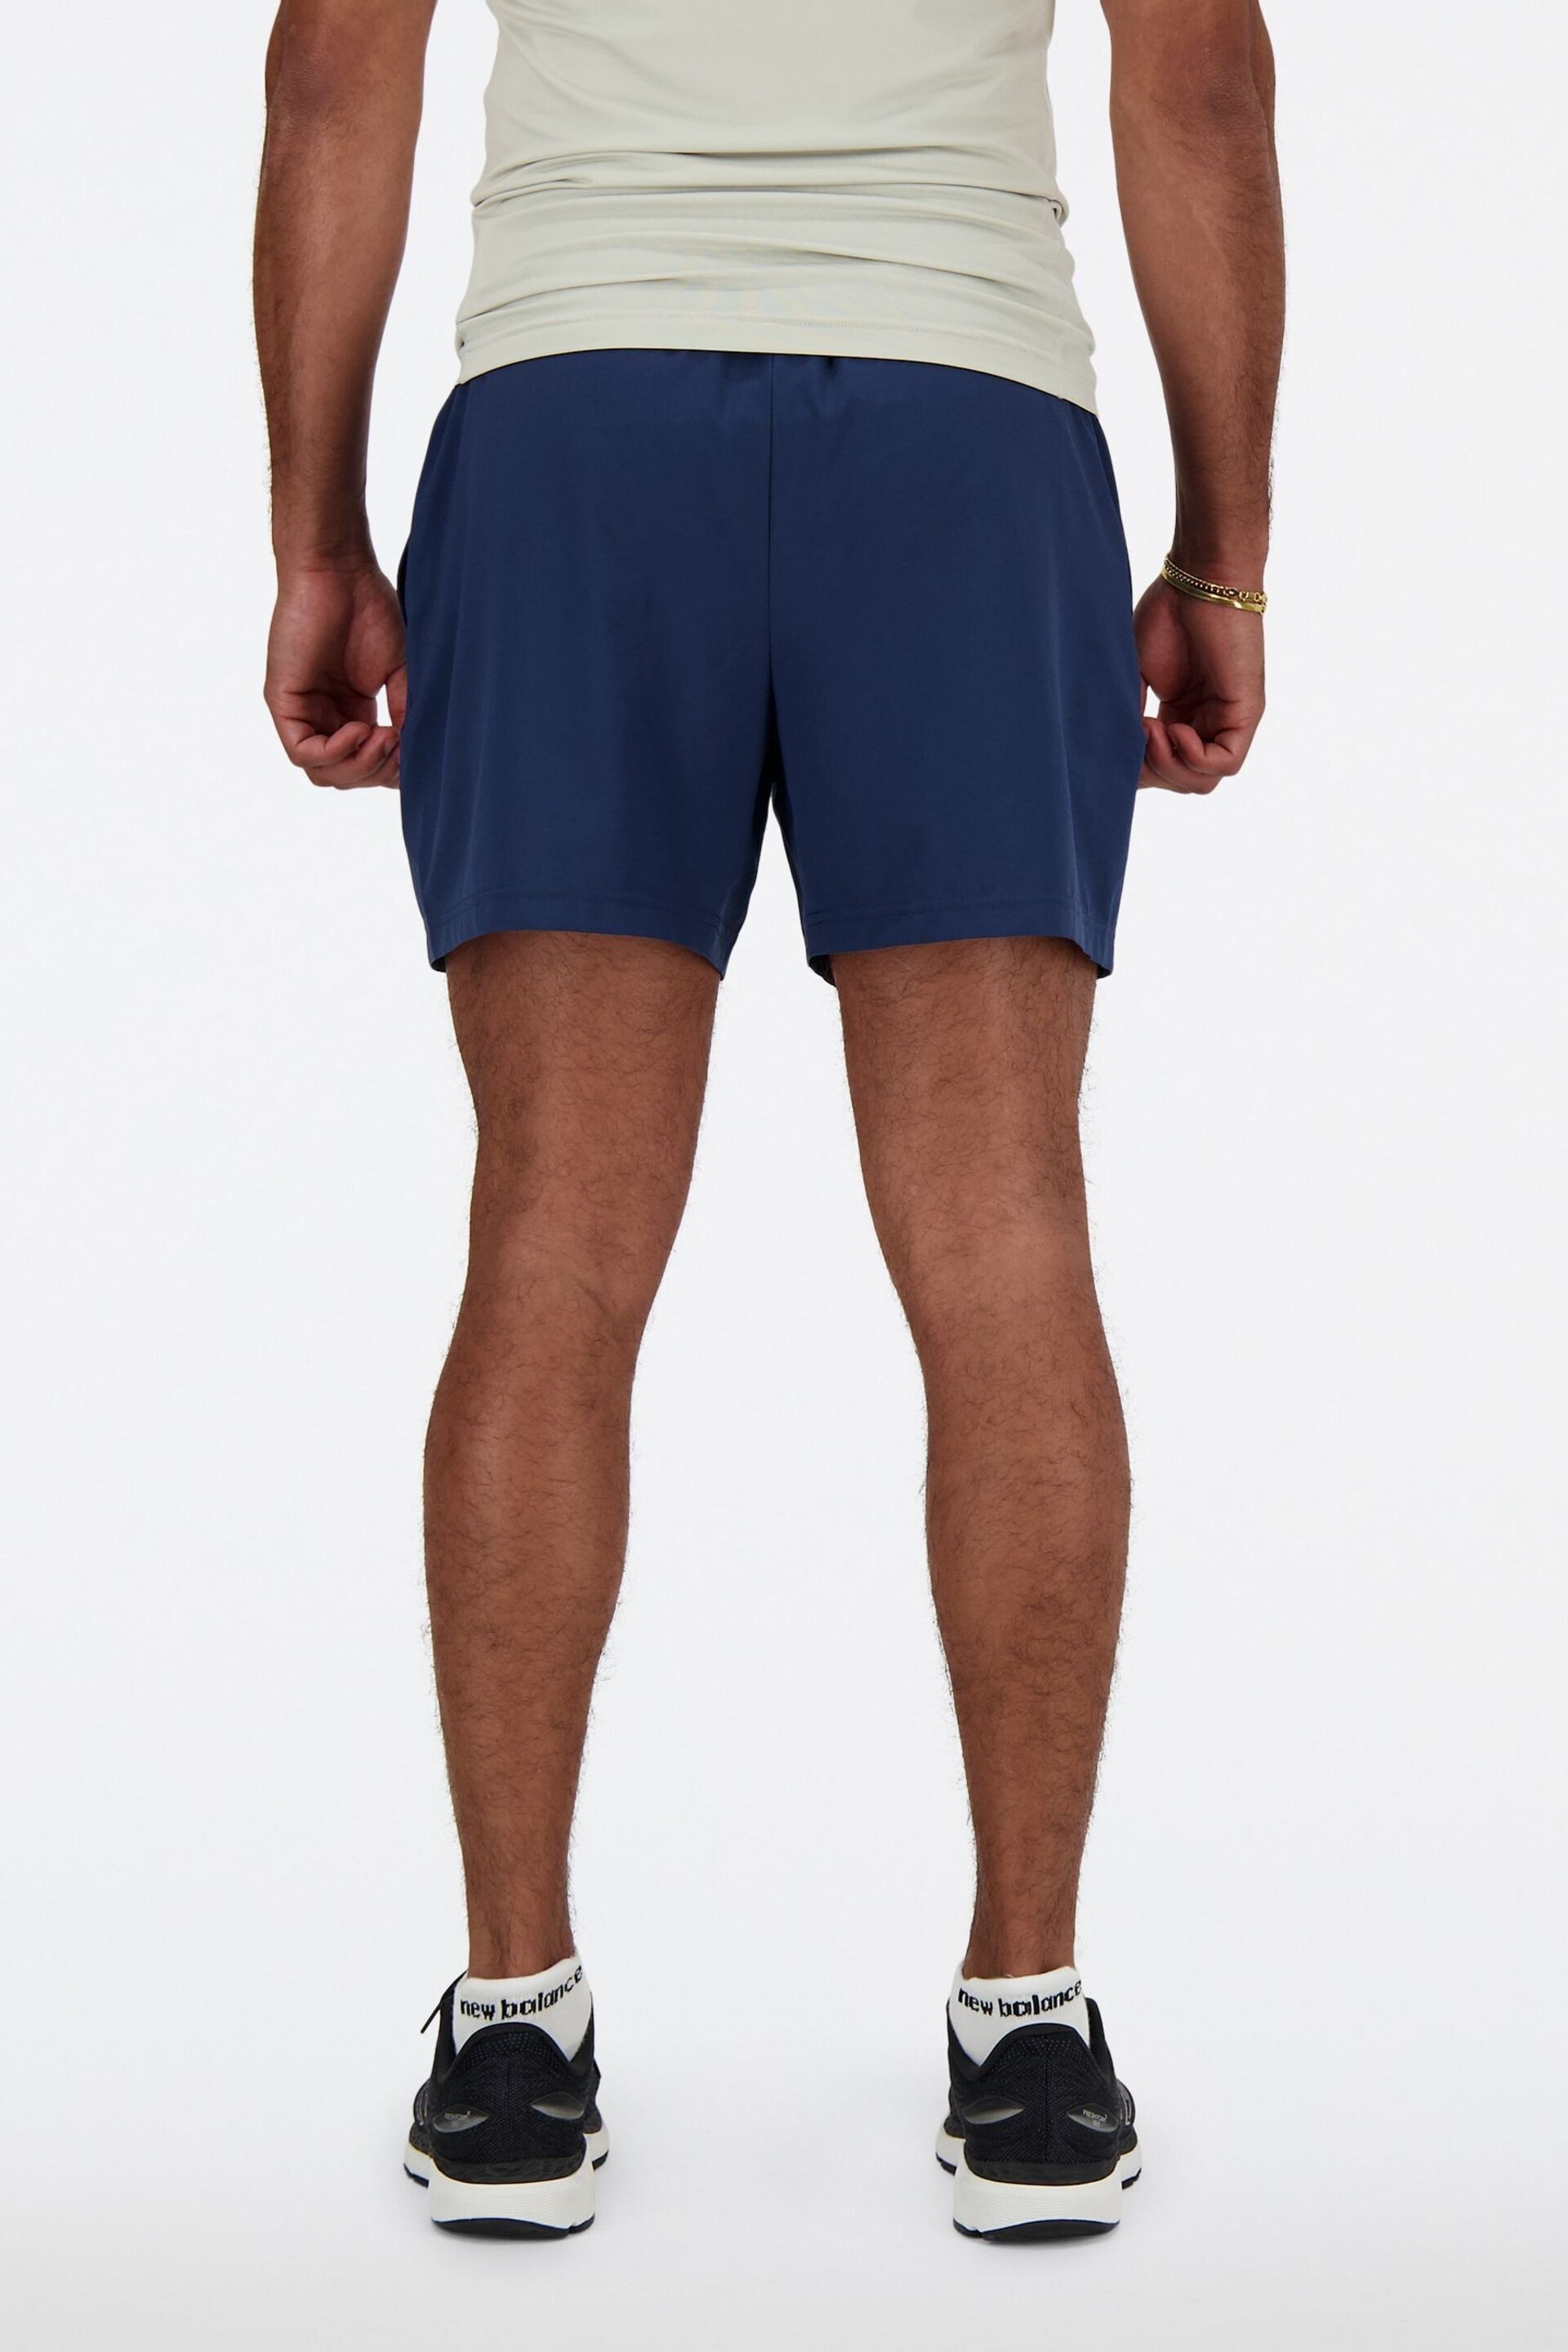 New Balance Blue 5 Inch Shorts - Image 2 of 8